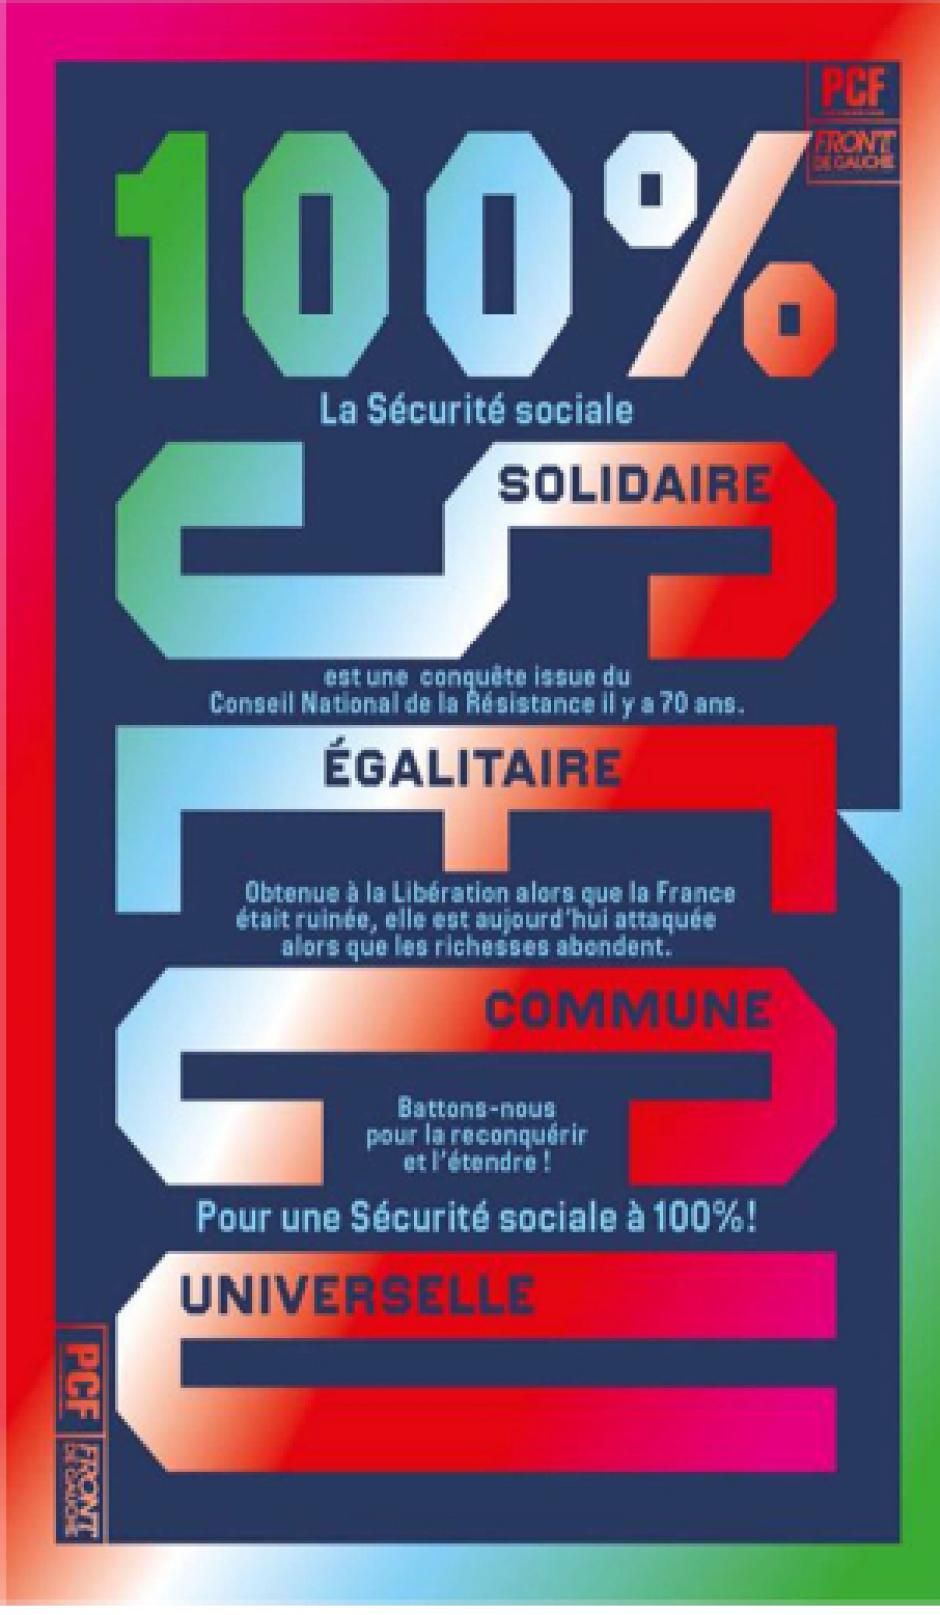 Intervention de Pierre Laurent à l'occasion des 70 ans de la Sécurité sociale